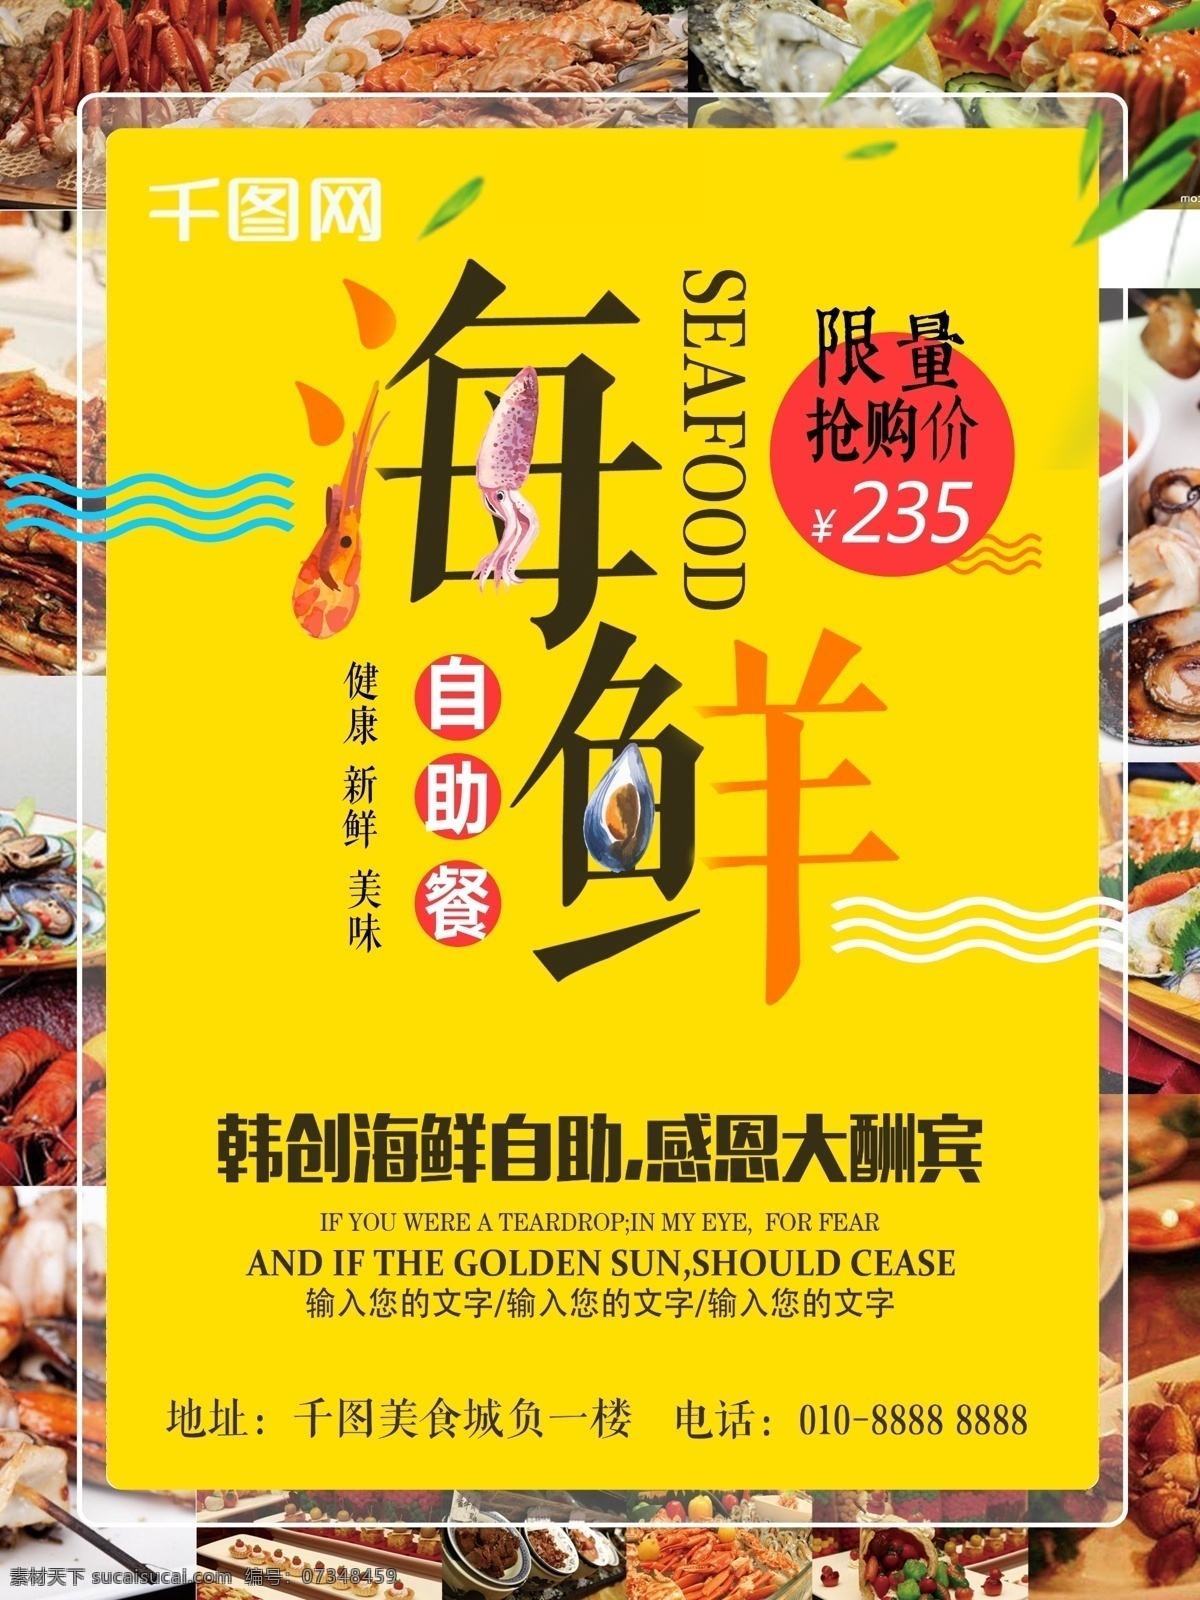 创意 海鲜 自助餐 美食 海鲜自助餐 美食海报 自助餐海报 海鲜海报 韩式自助餐